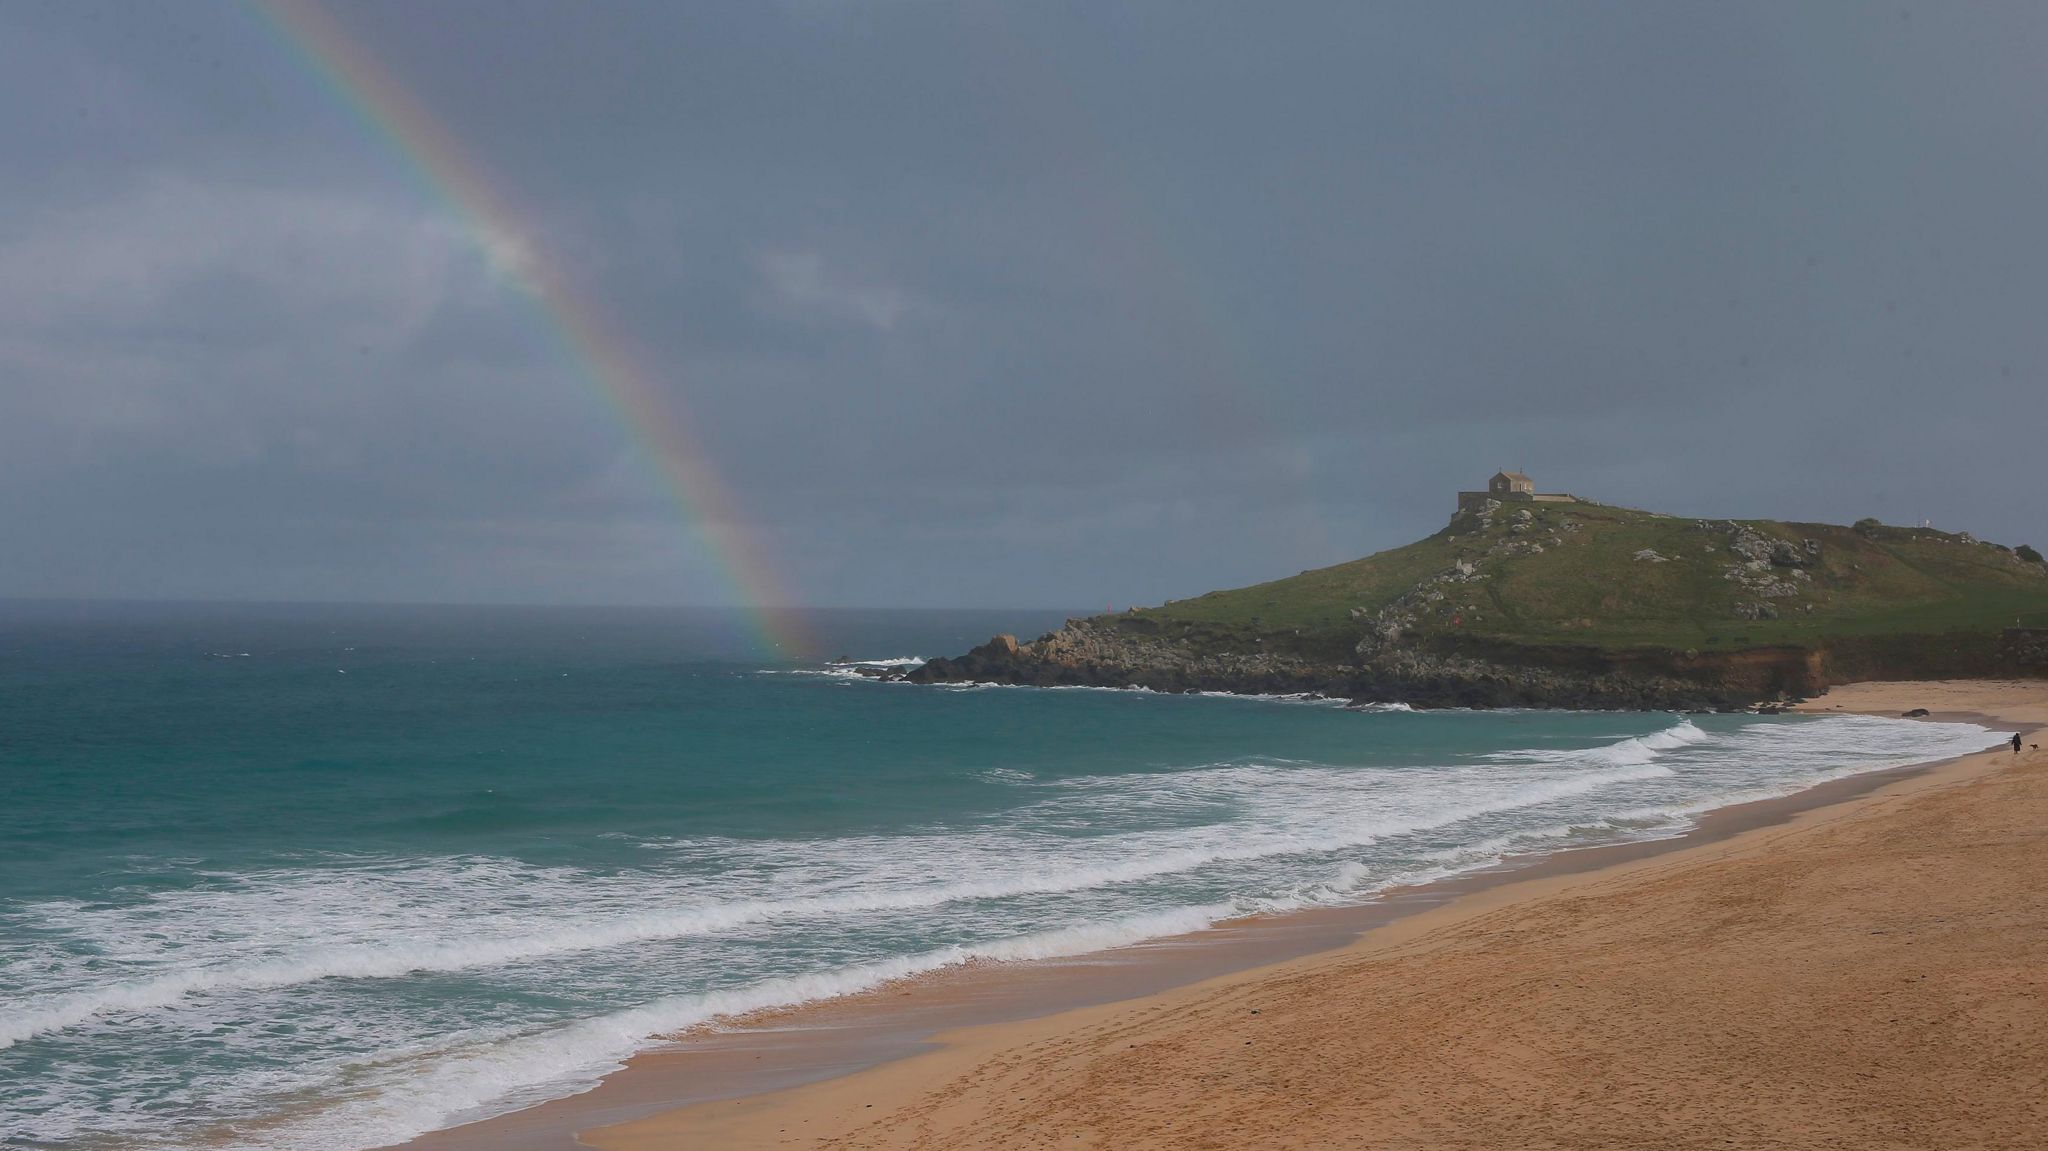 A rainbow over Porthmeor beach